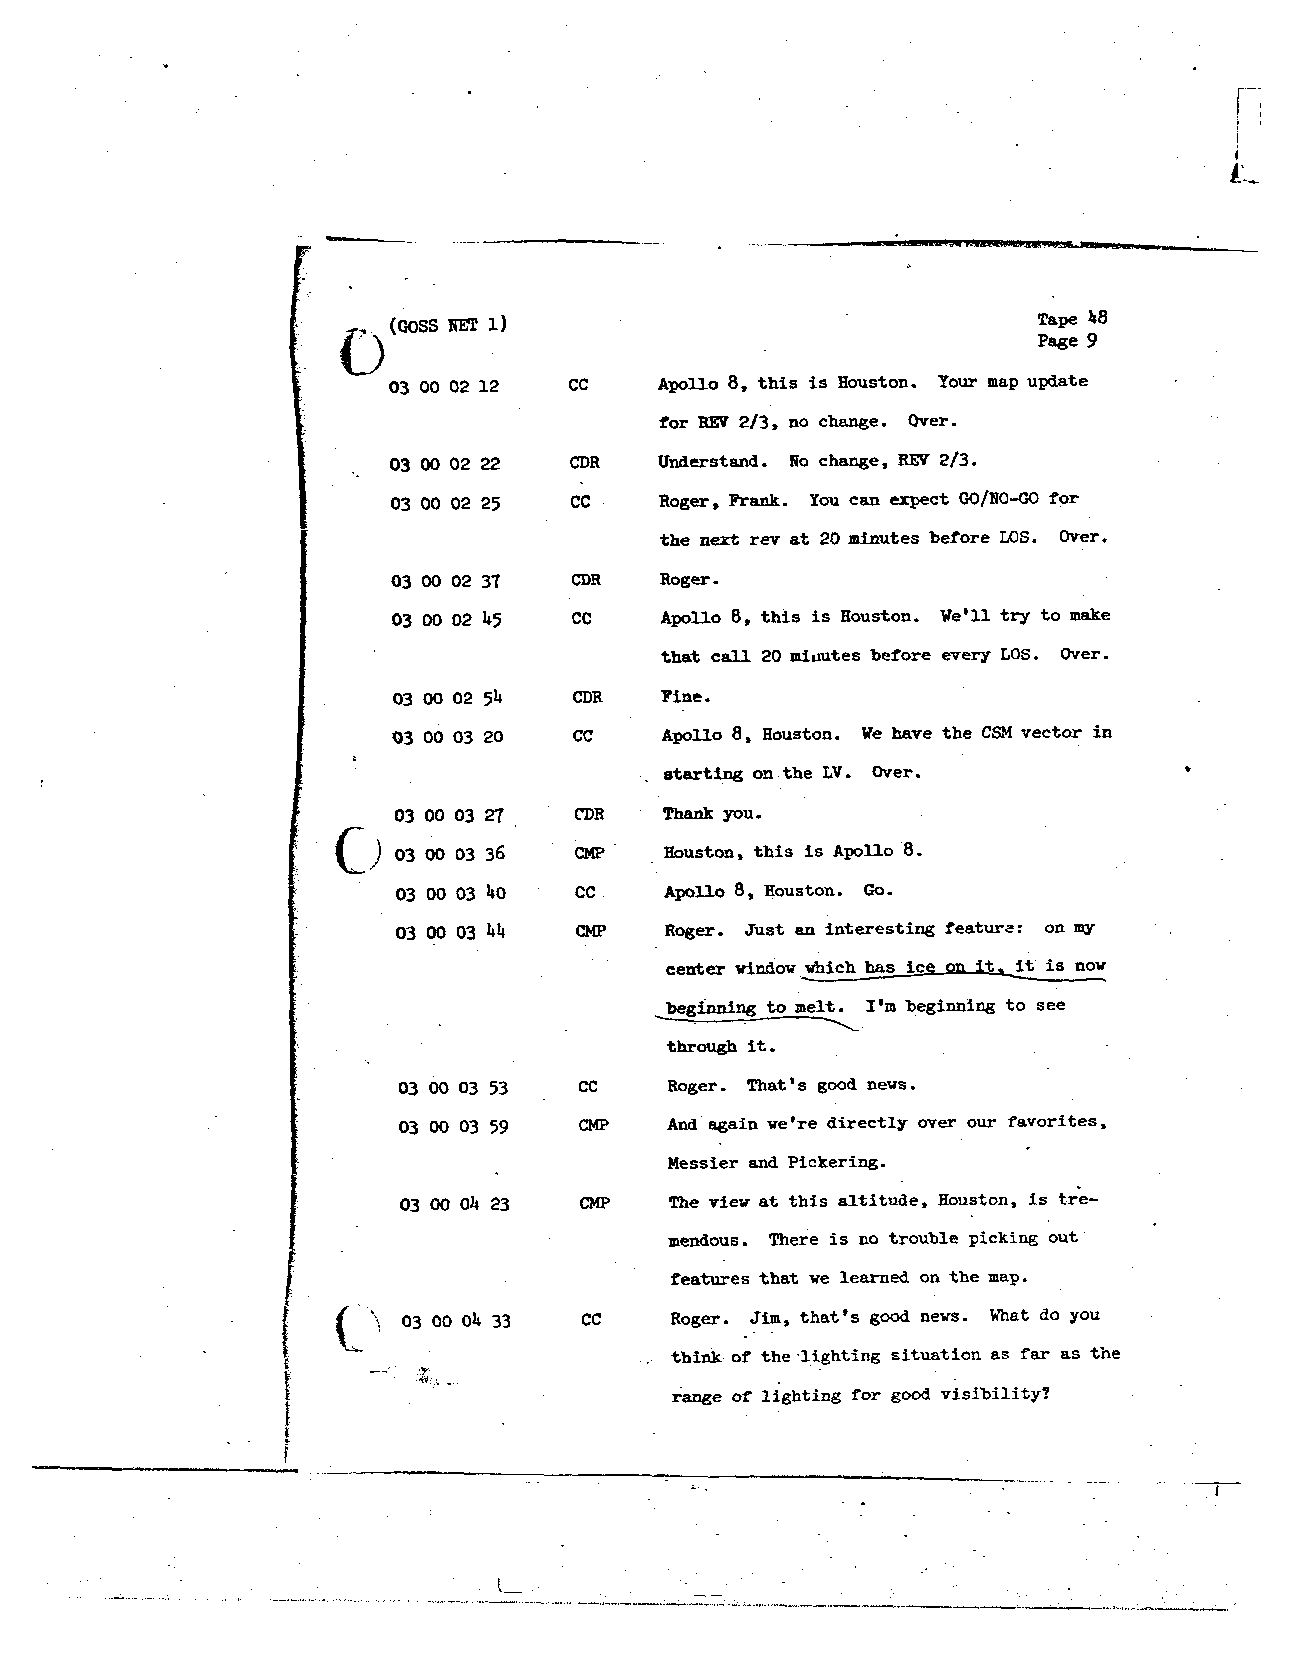 Page 381 of Apollo 8’s original transcript